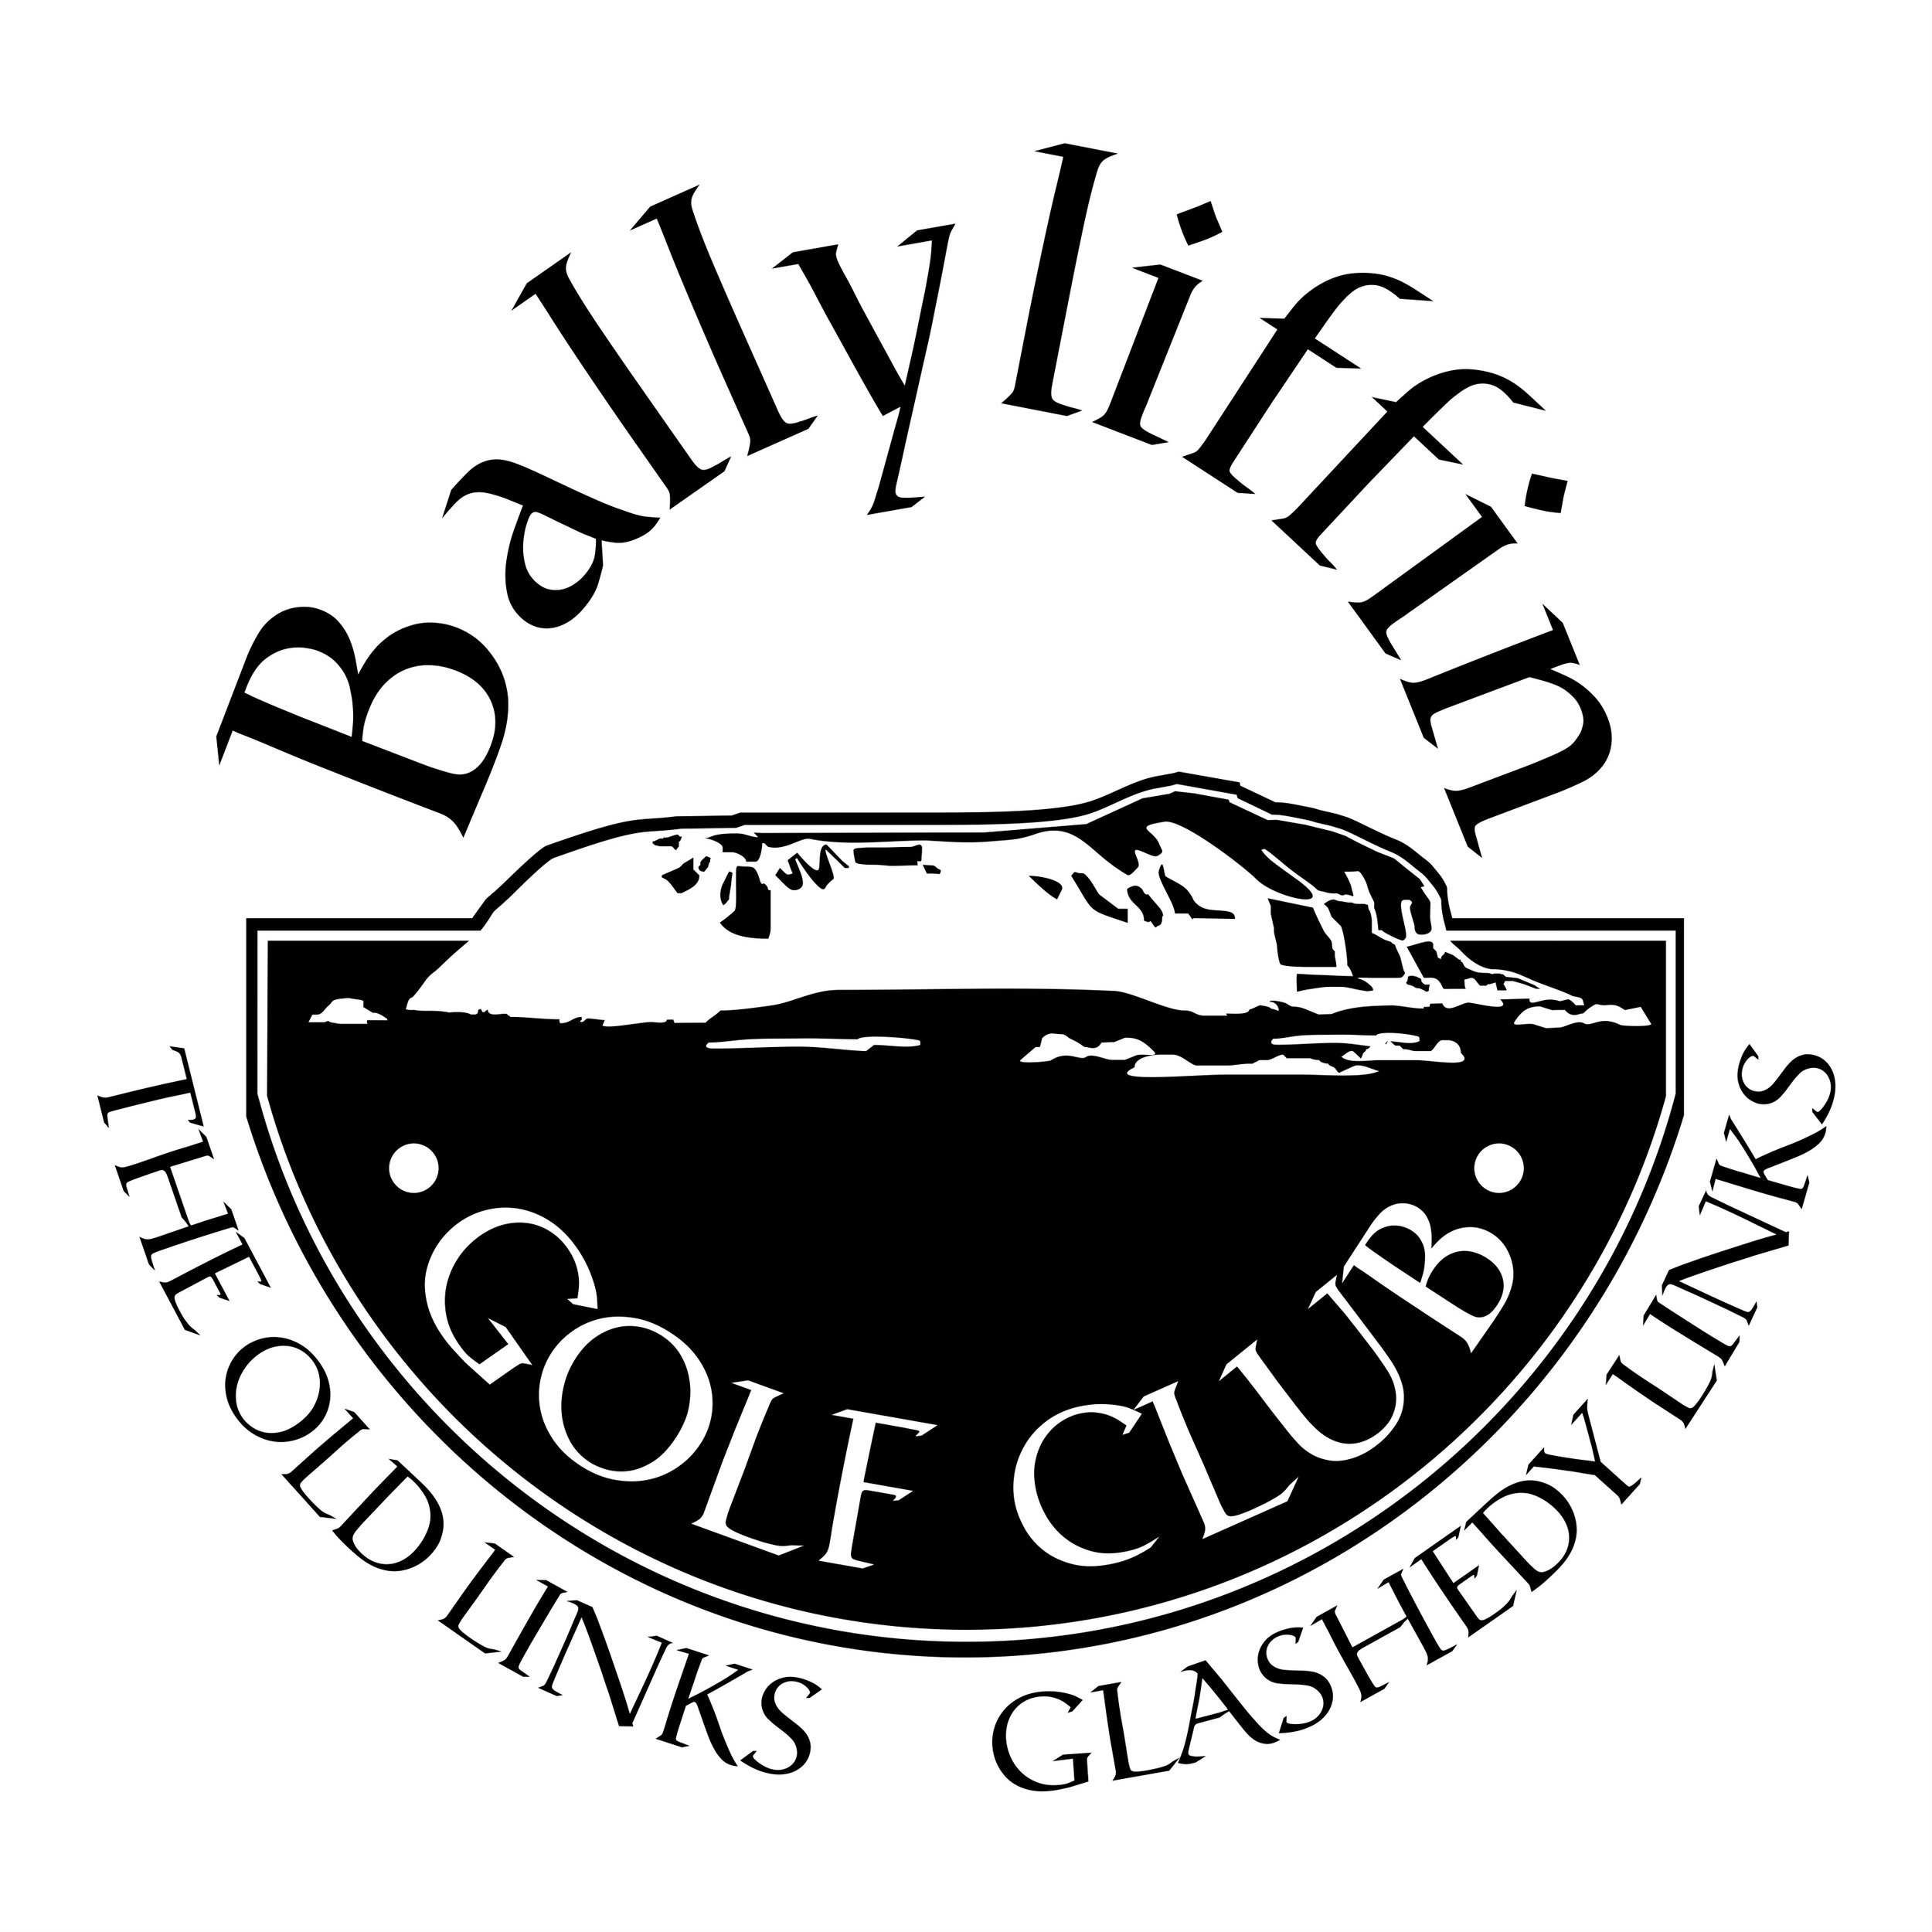 ballyliffinhighres logo.jpg